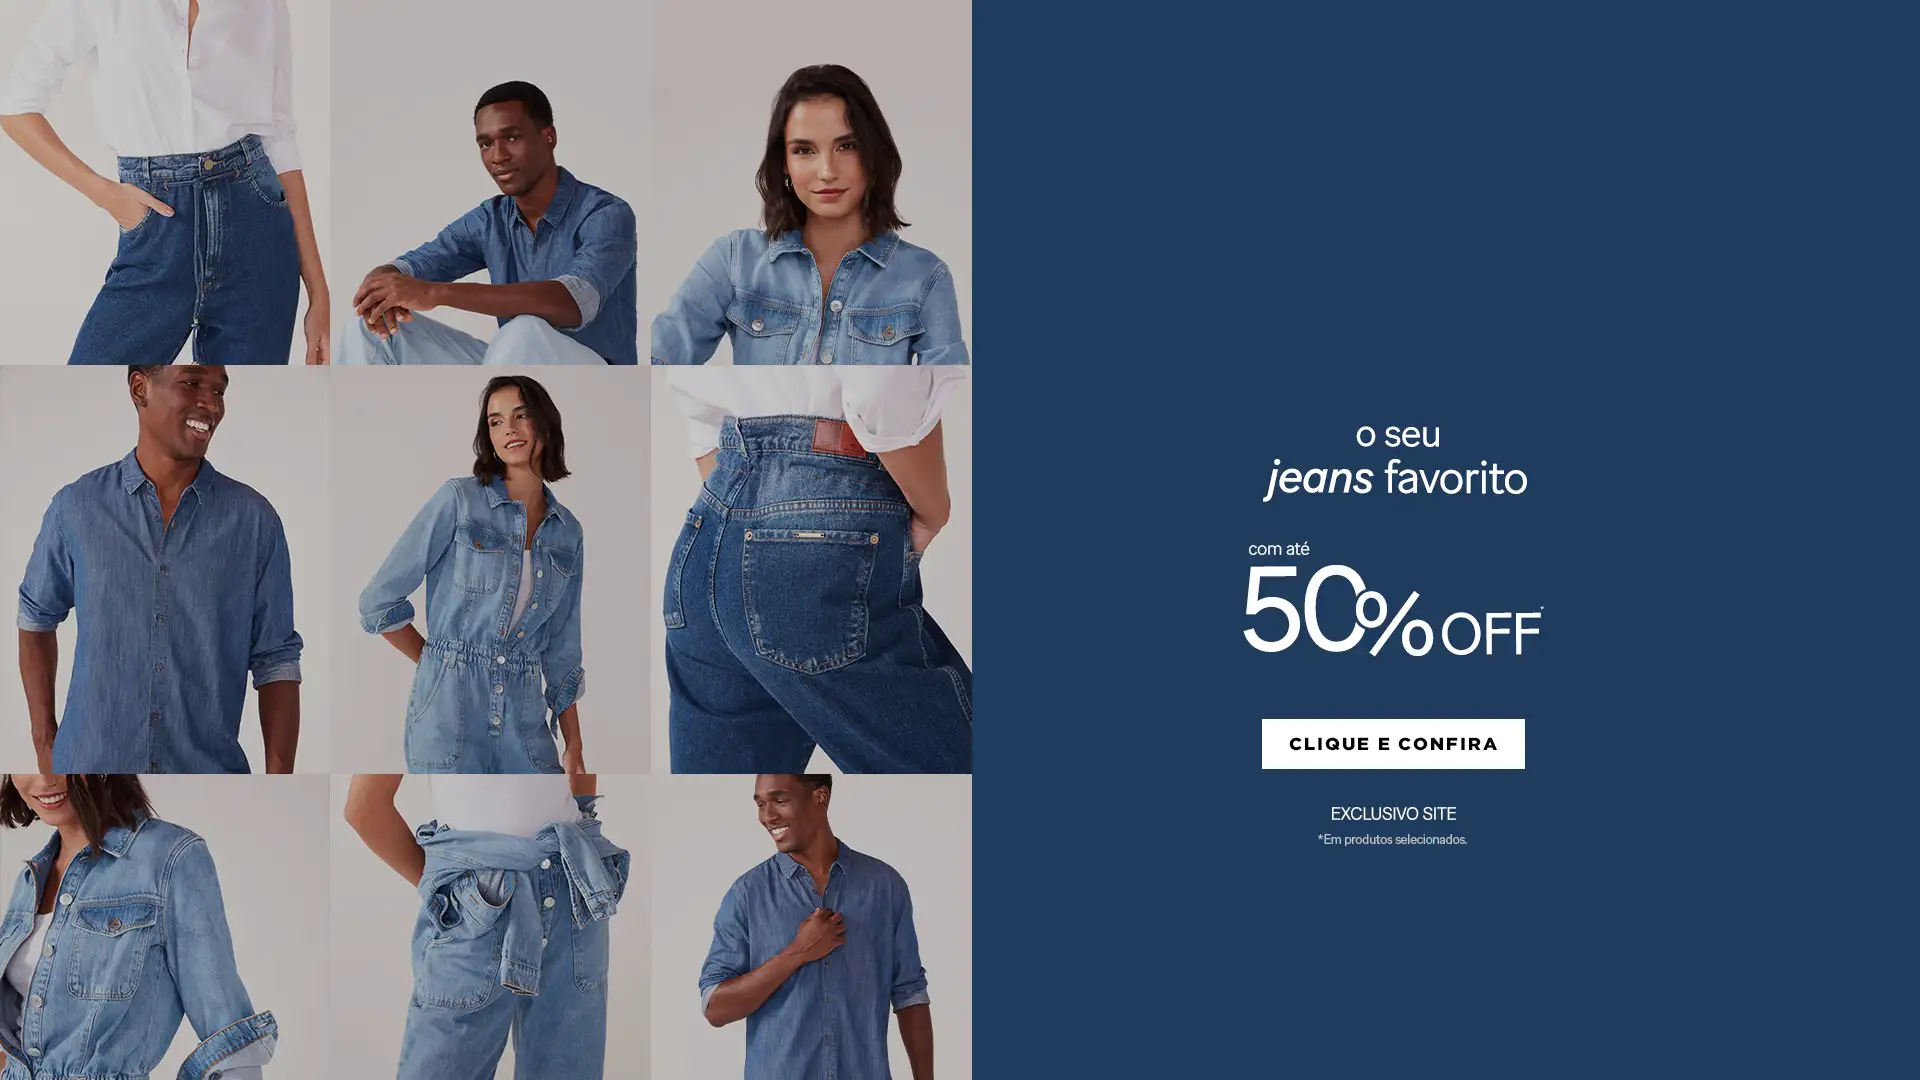 Seu Jeans Favorito com até 50% off